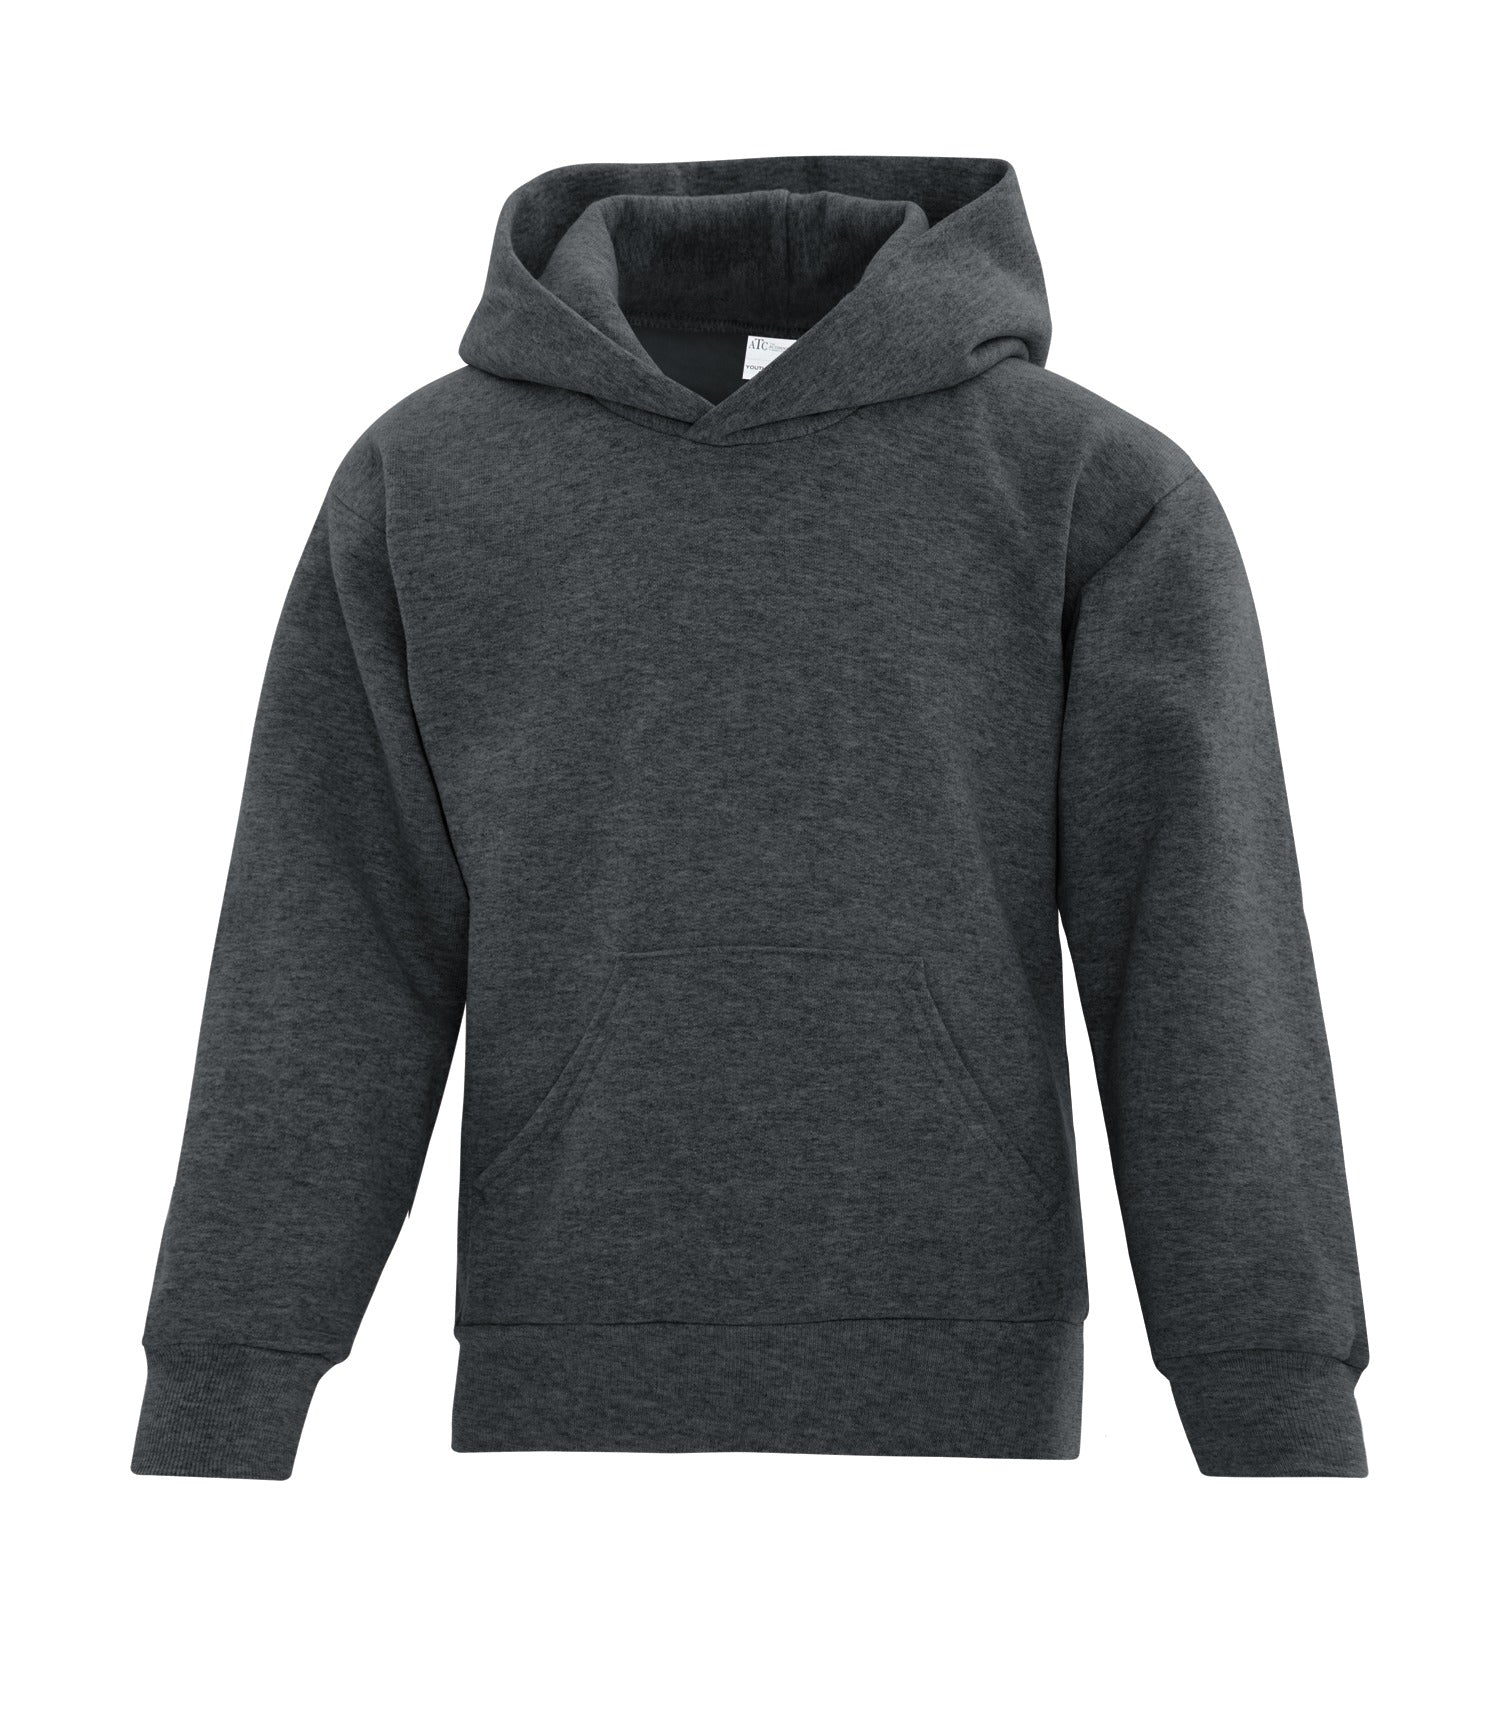 ATCF2500 Everyday Fleece Hooded Sweatshirt - Save-On-Shirts